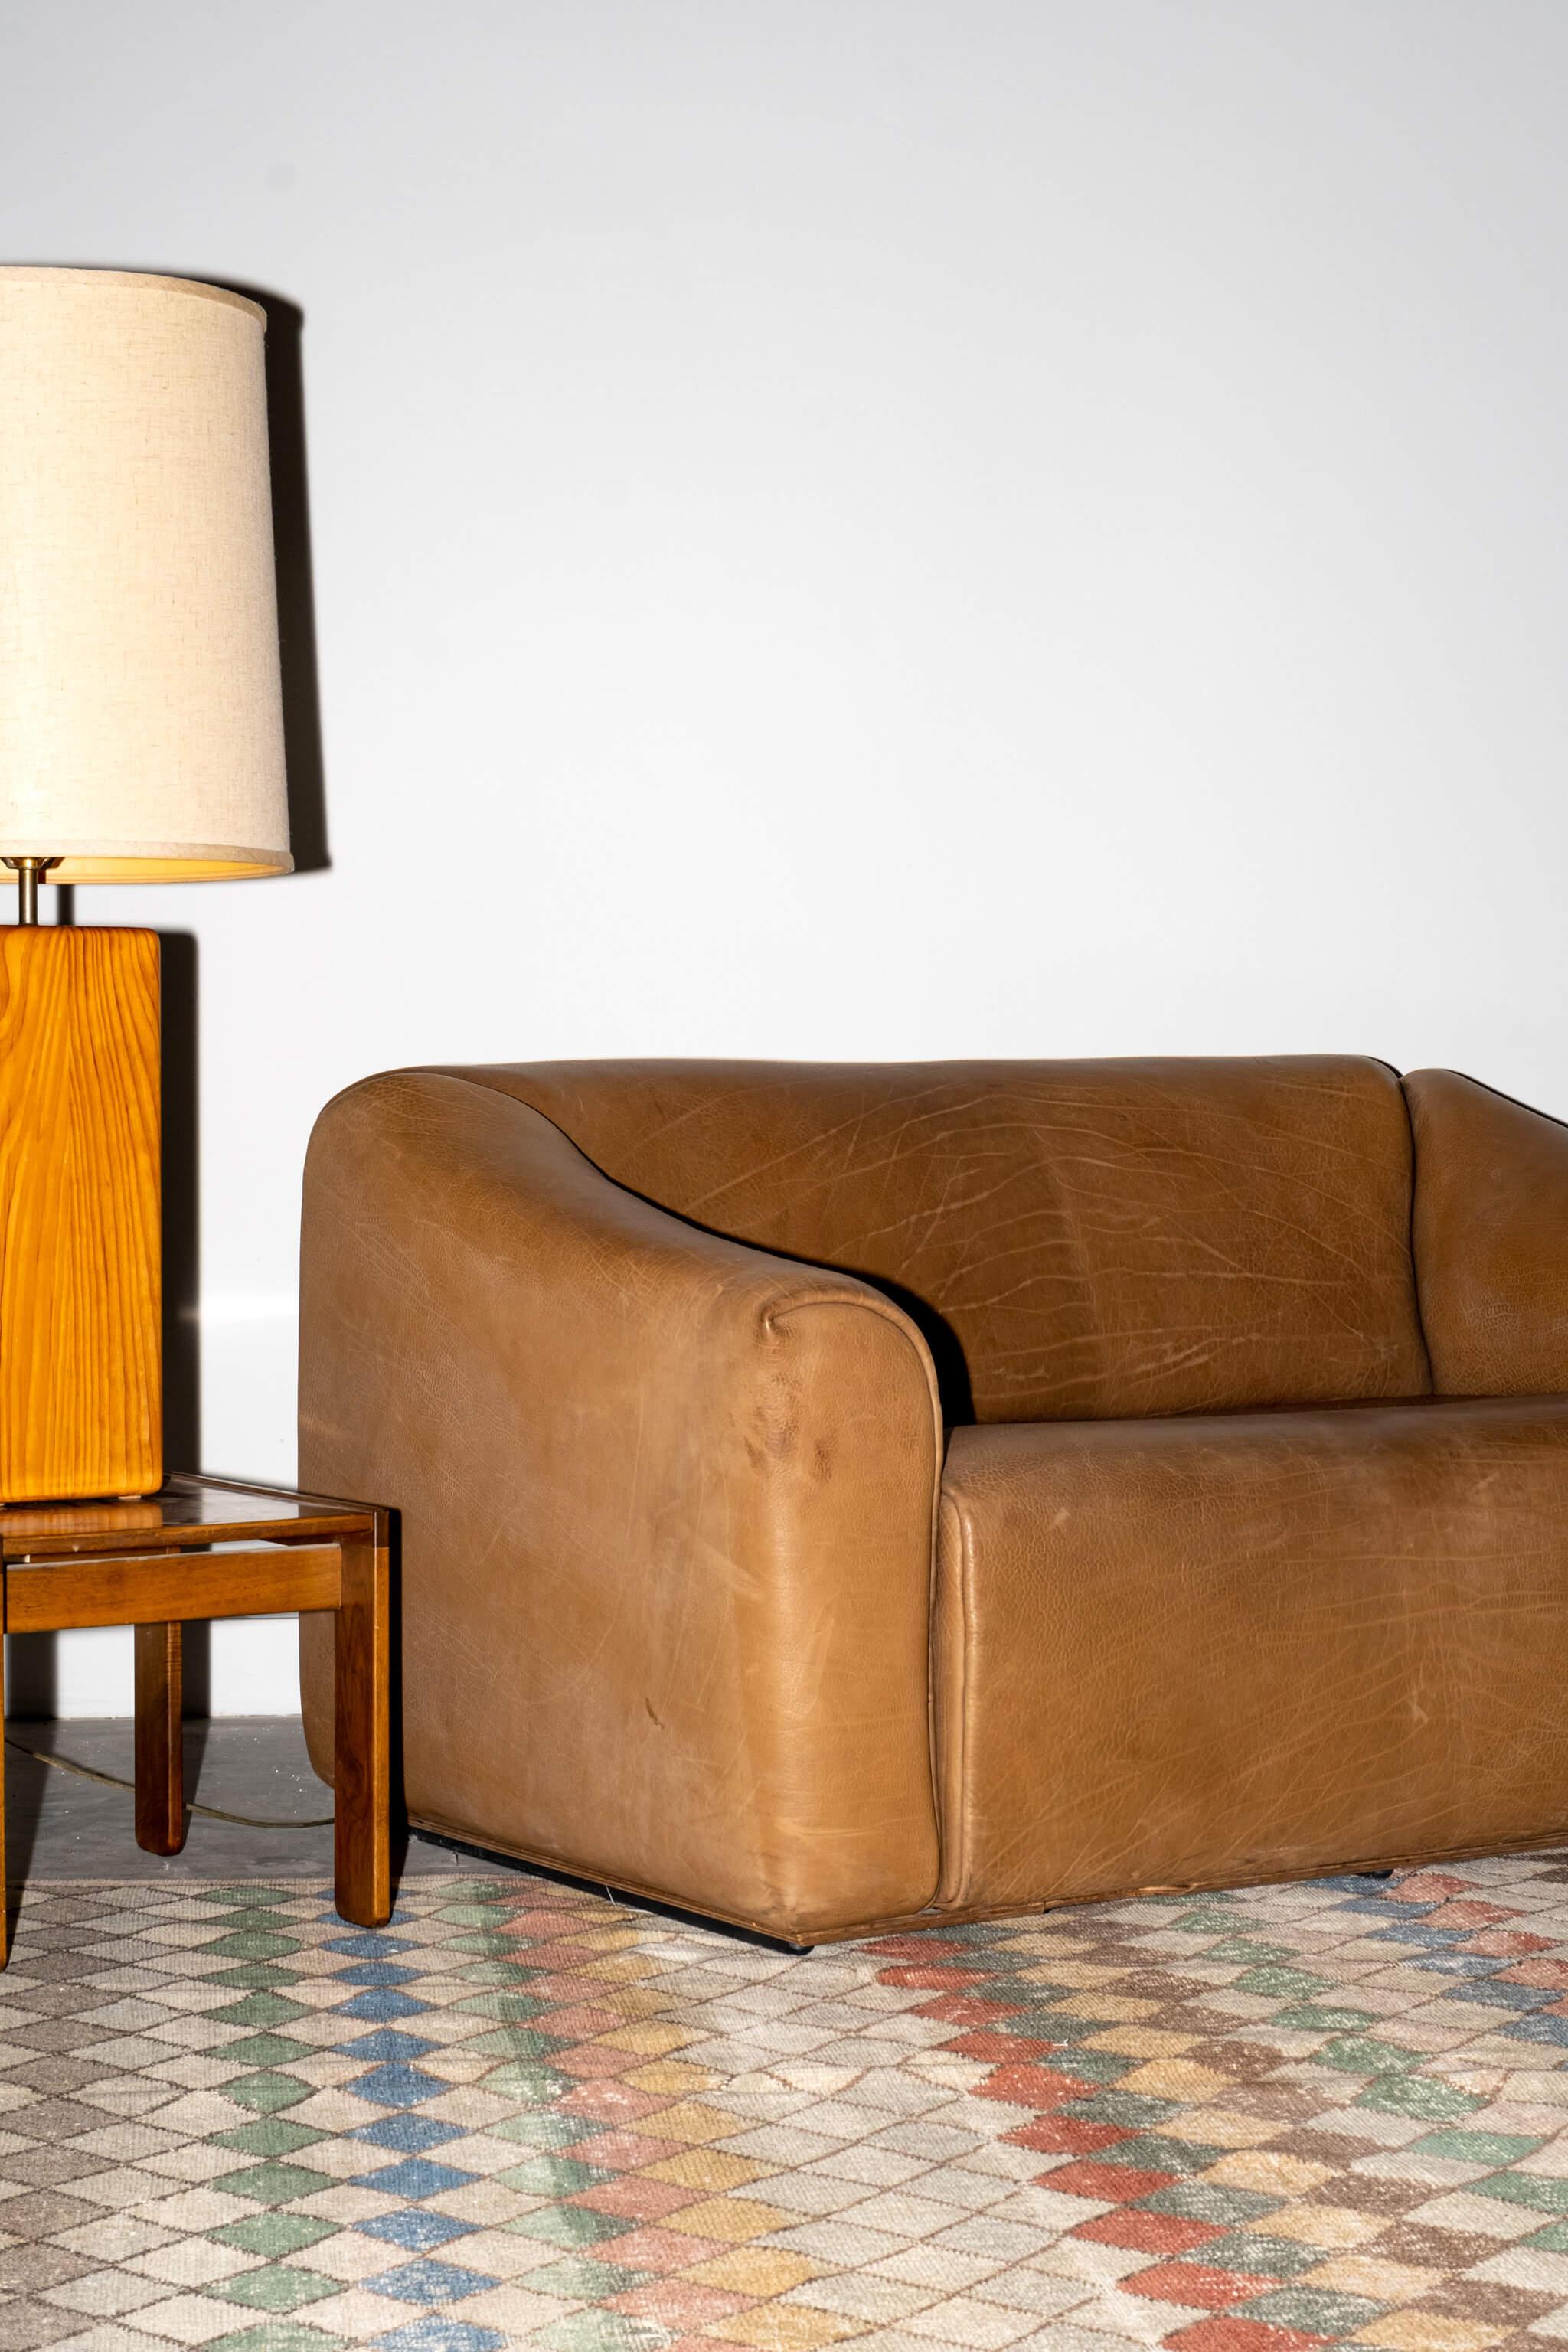 Dieses robuste und bequeme Sofa wurde in den 1970er Jahren von De Sede Switzerland - ursprünglich eine Sattlerwerkstatt - mit viel Geschick aus 5 mm dickem NECK-Leder gefertigt, das die charakteristischen dicken Falten und eine schöne Patina